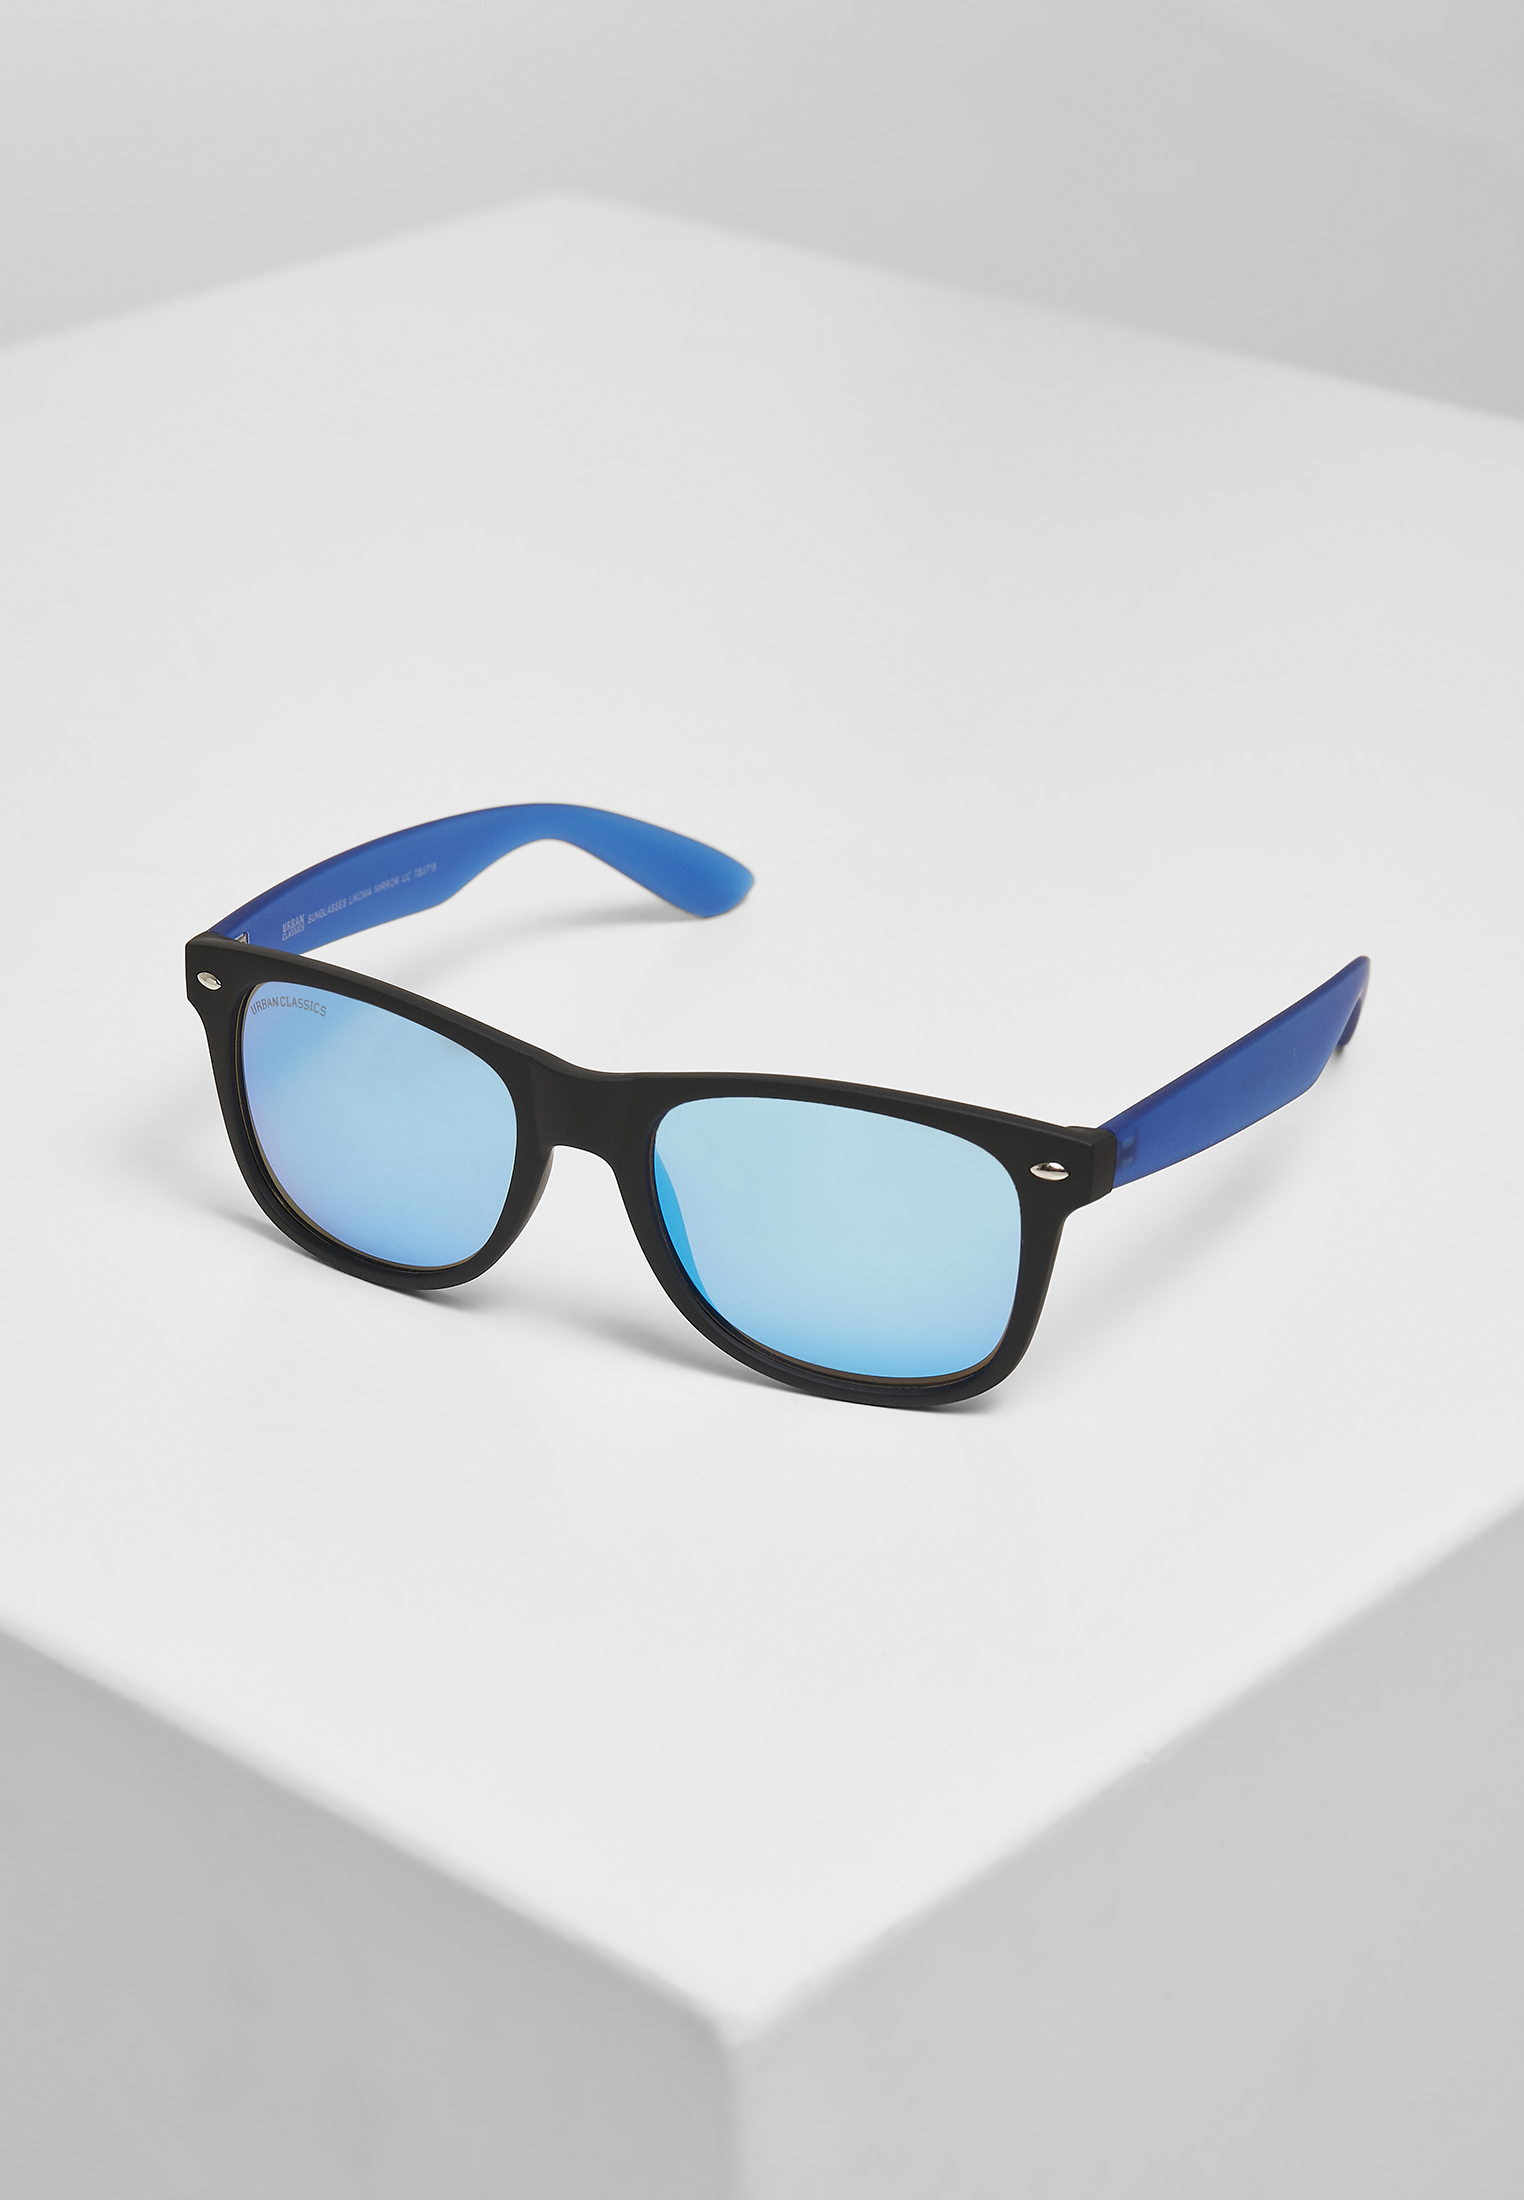 Sonnenbrillen Sunglasses Likoma Mirror UC in Farbe black/blue